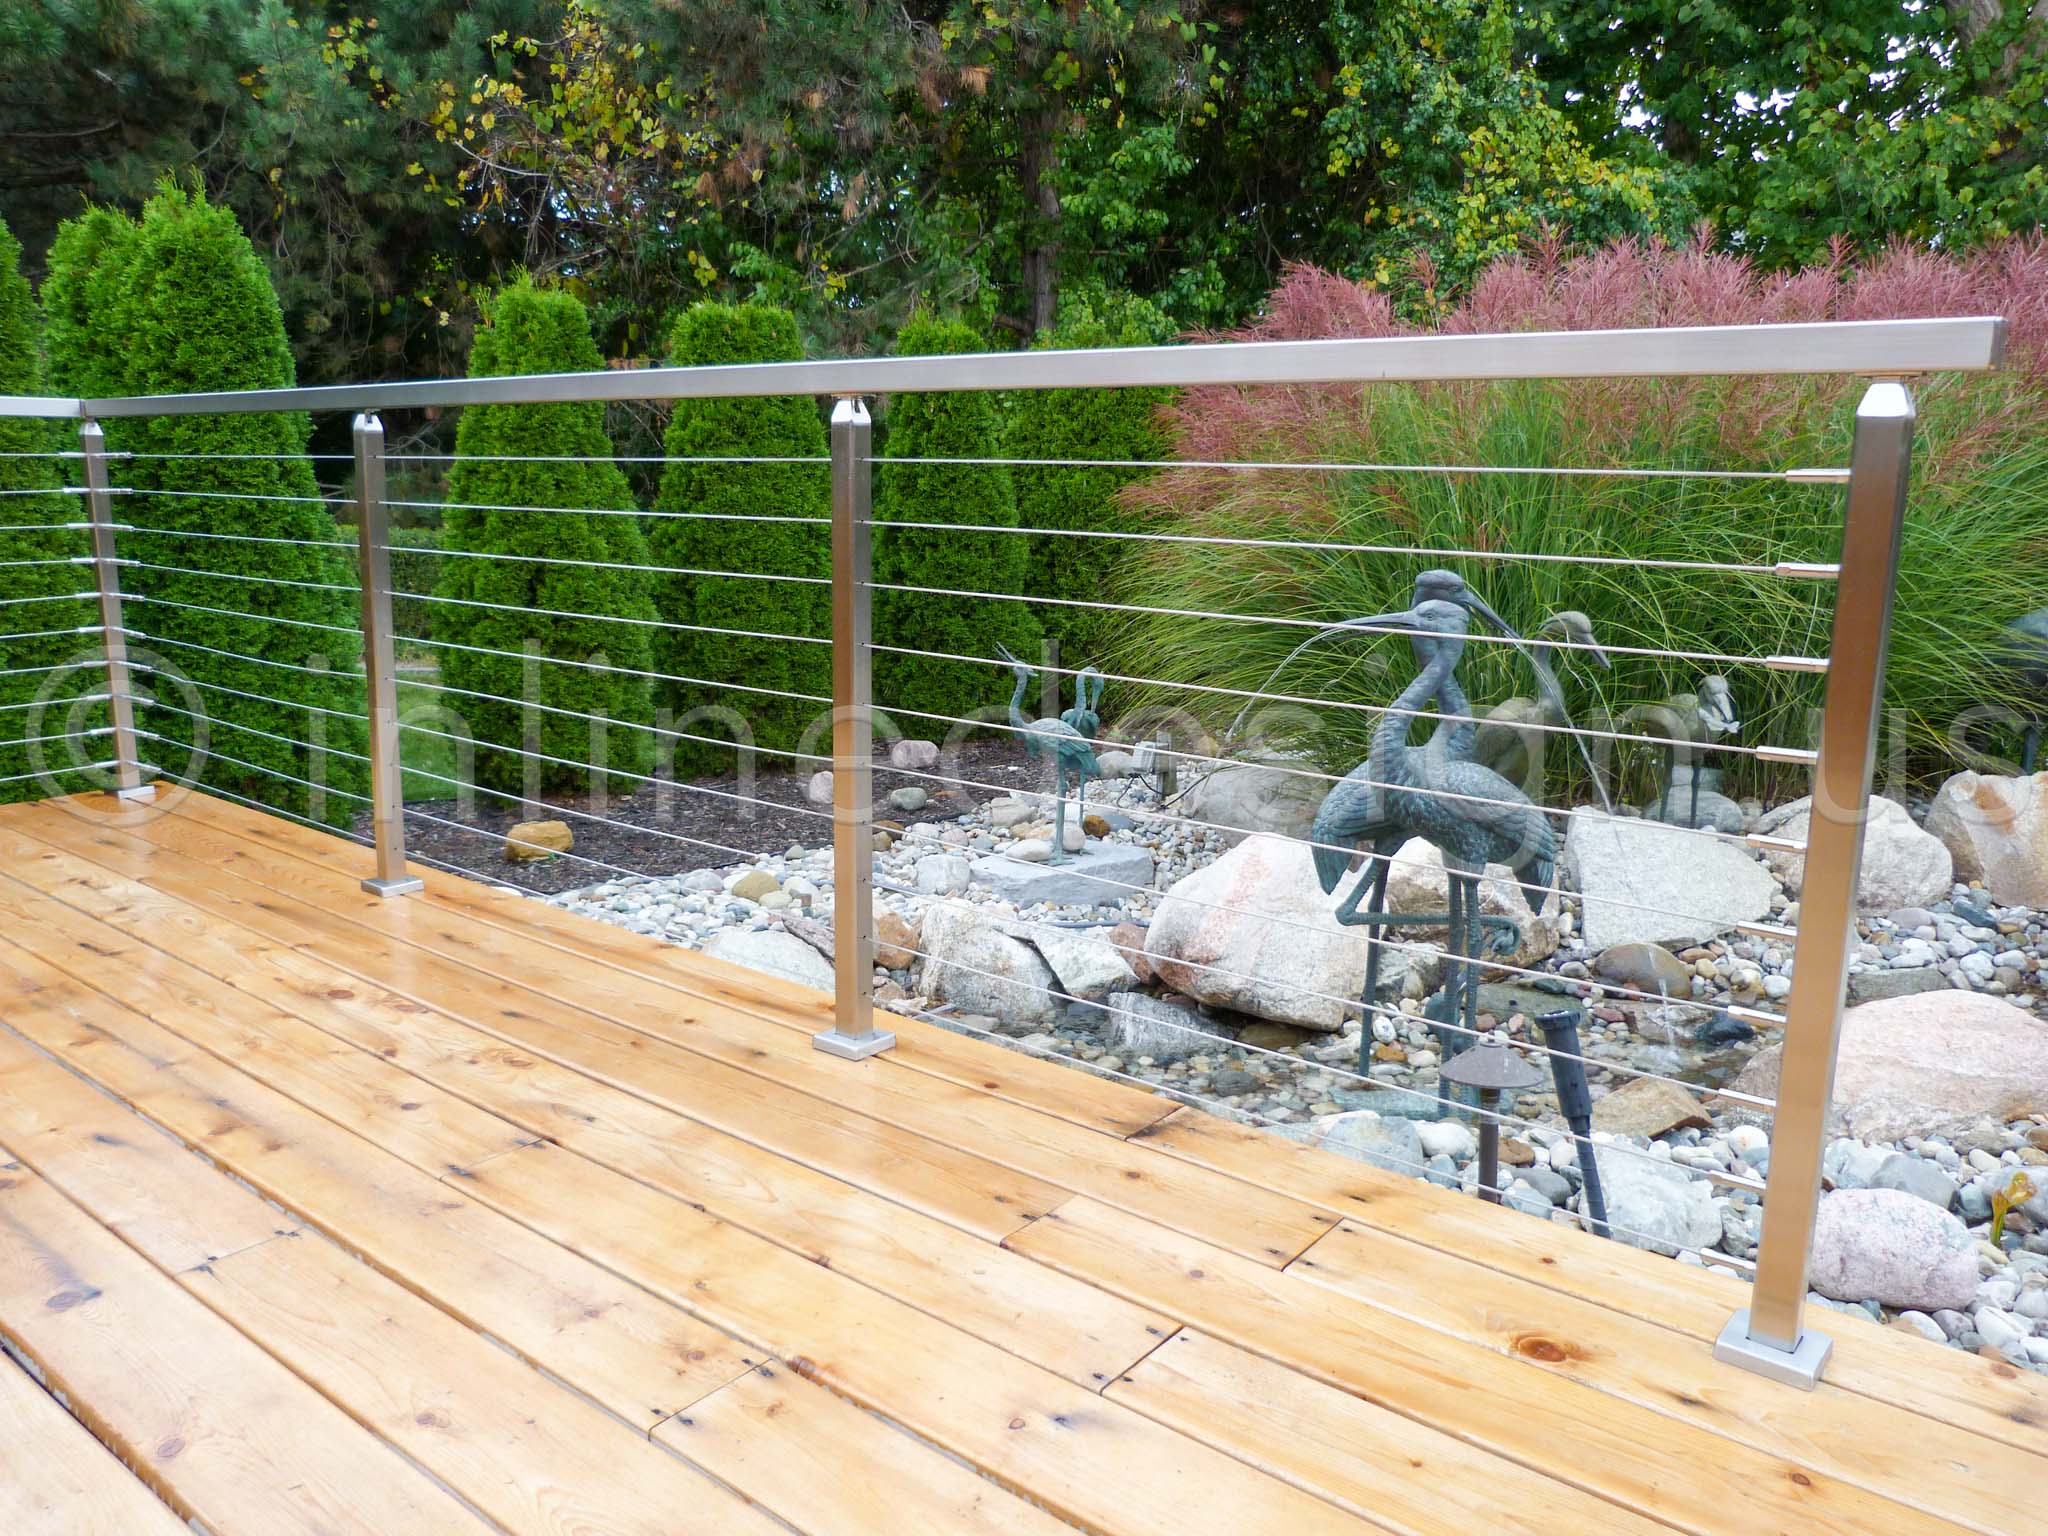 wood deck railing